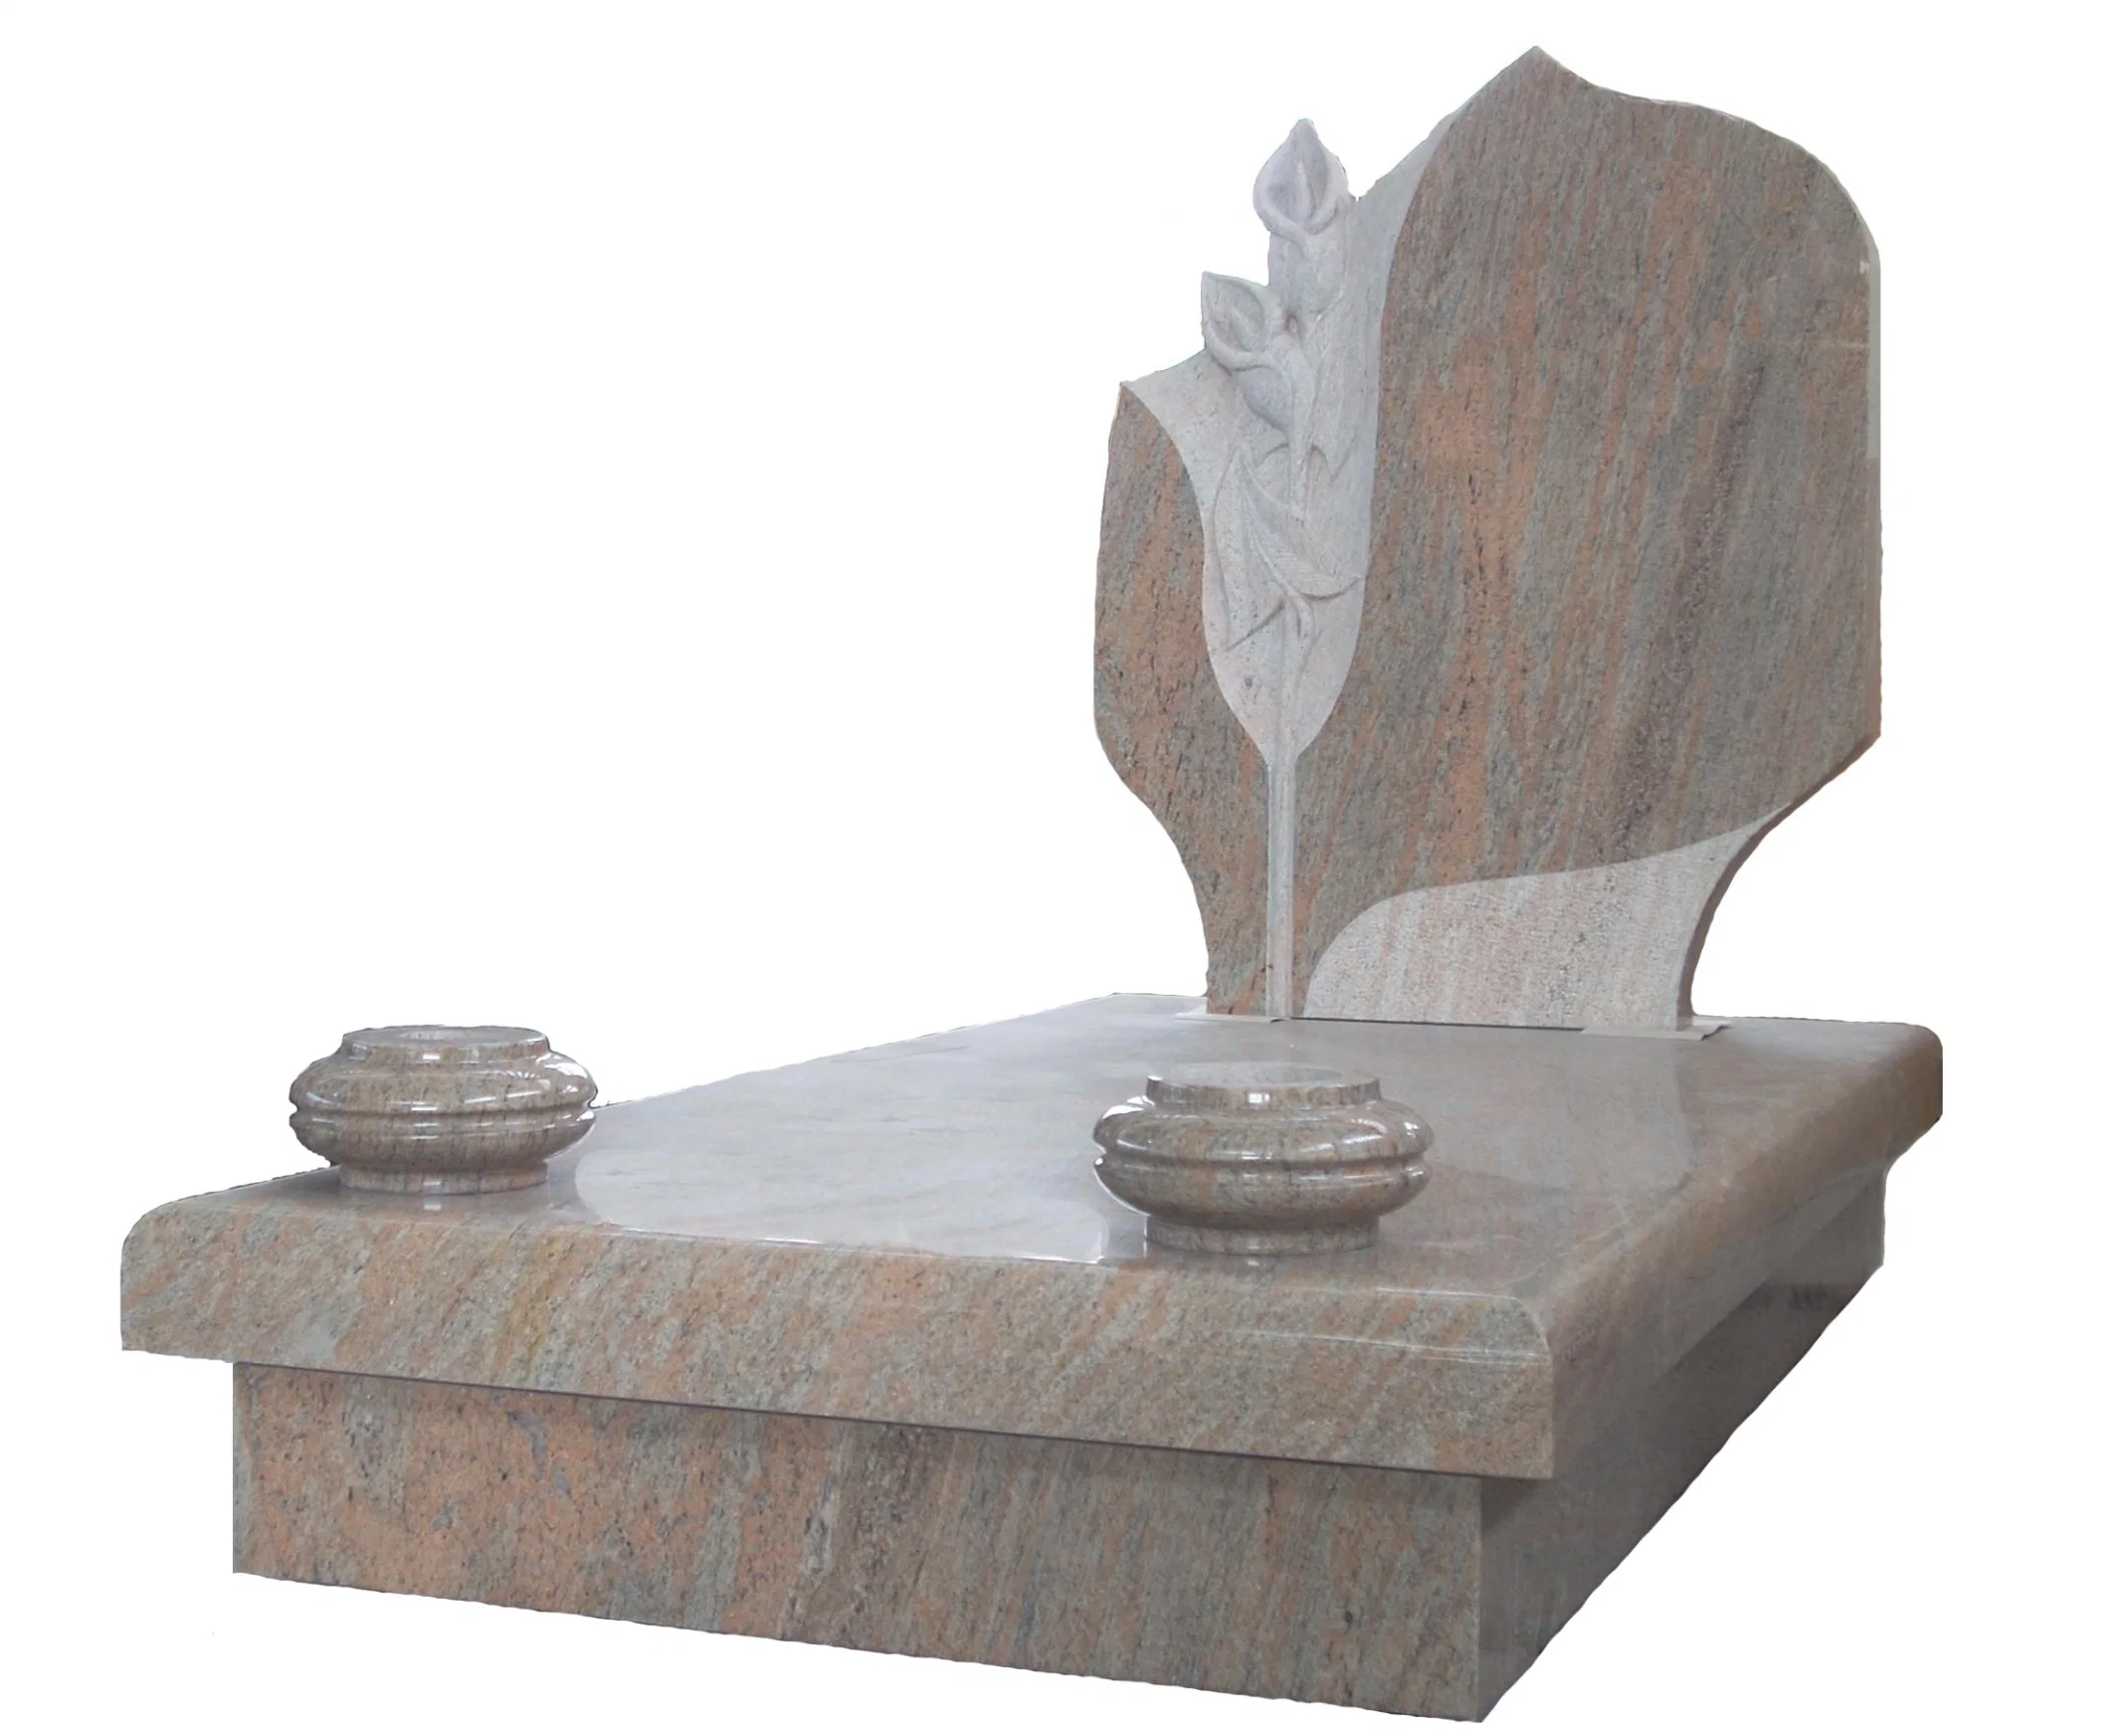 Калла Лили с заботой о рукояшном в каменном надгробном памятнике Нутуральный камень